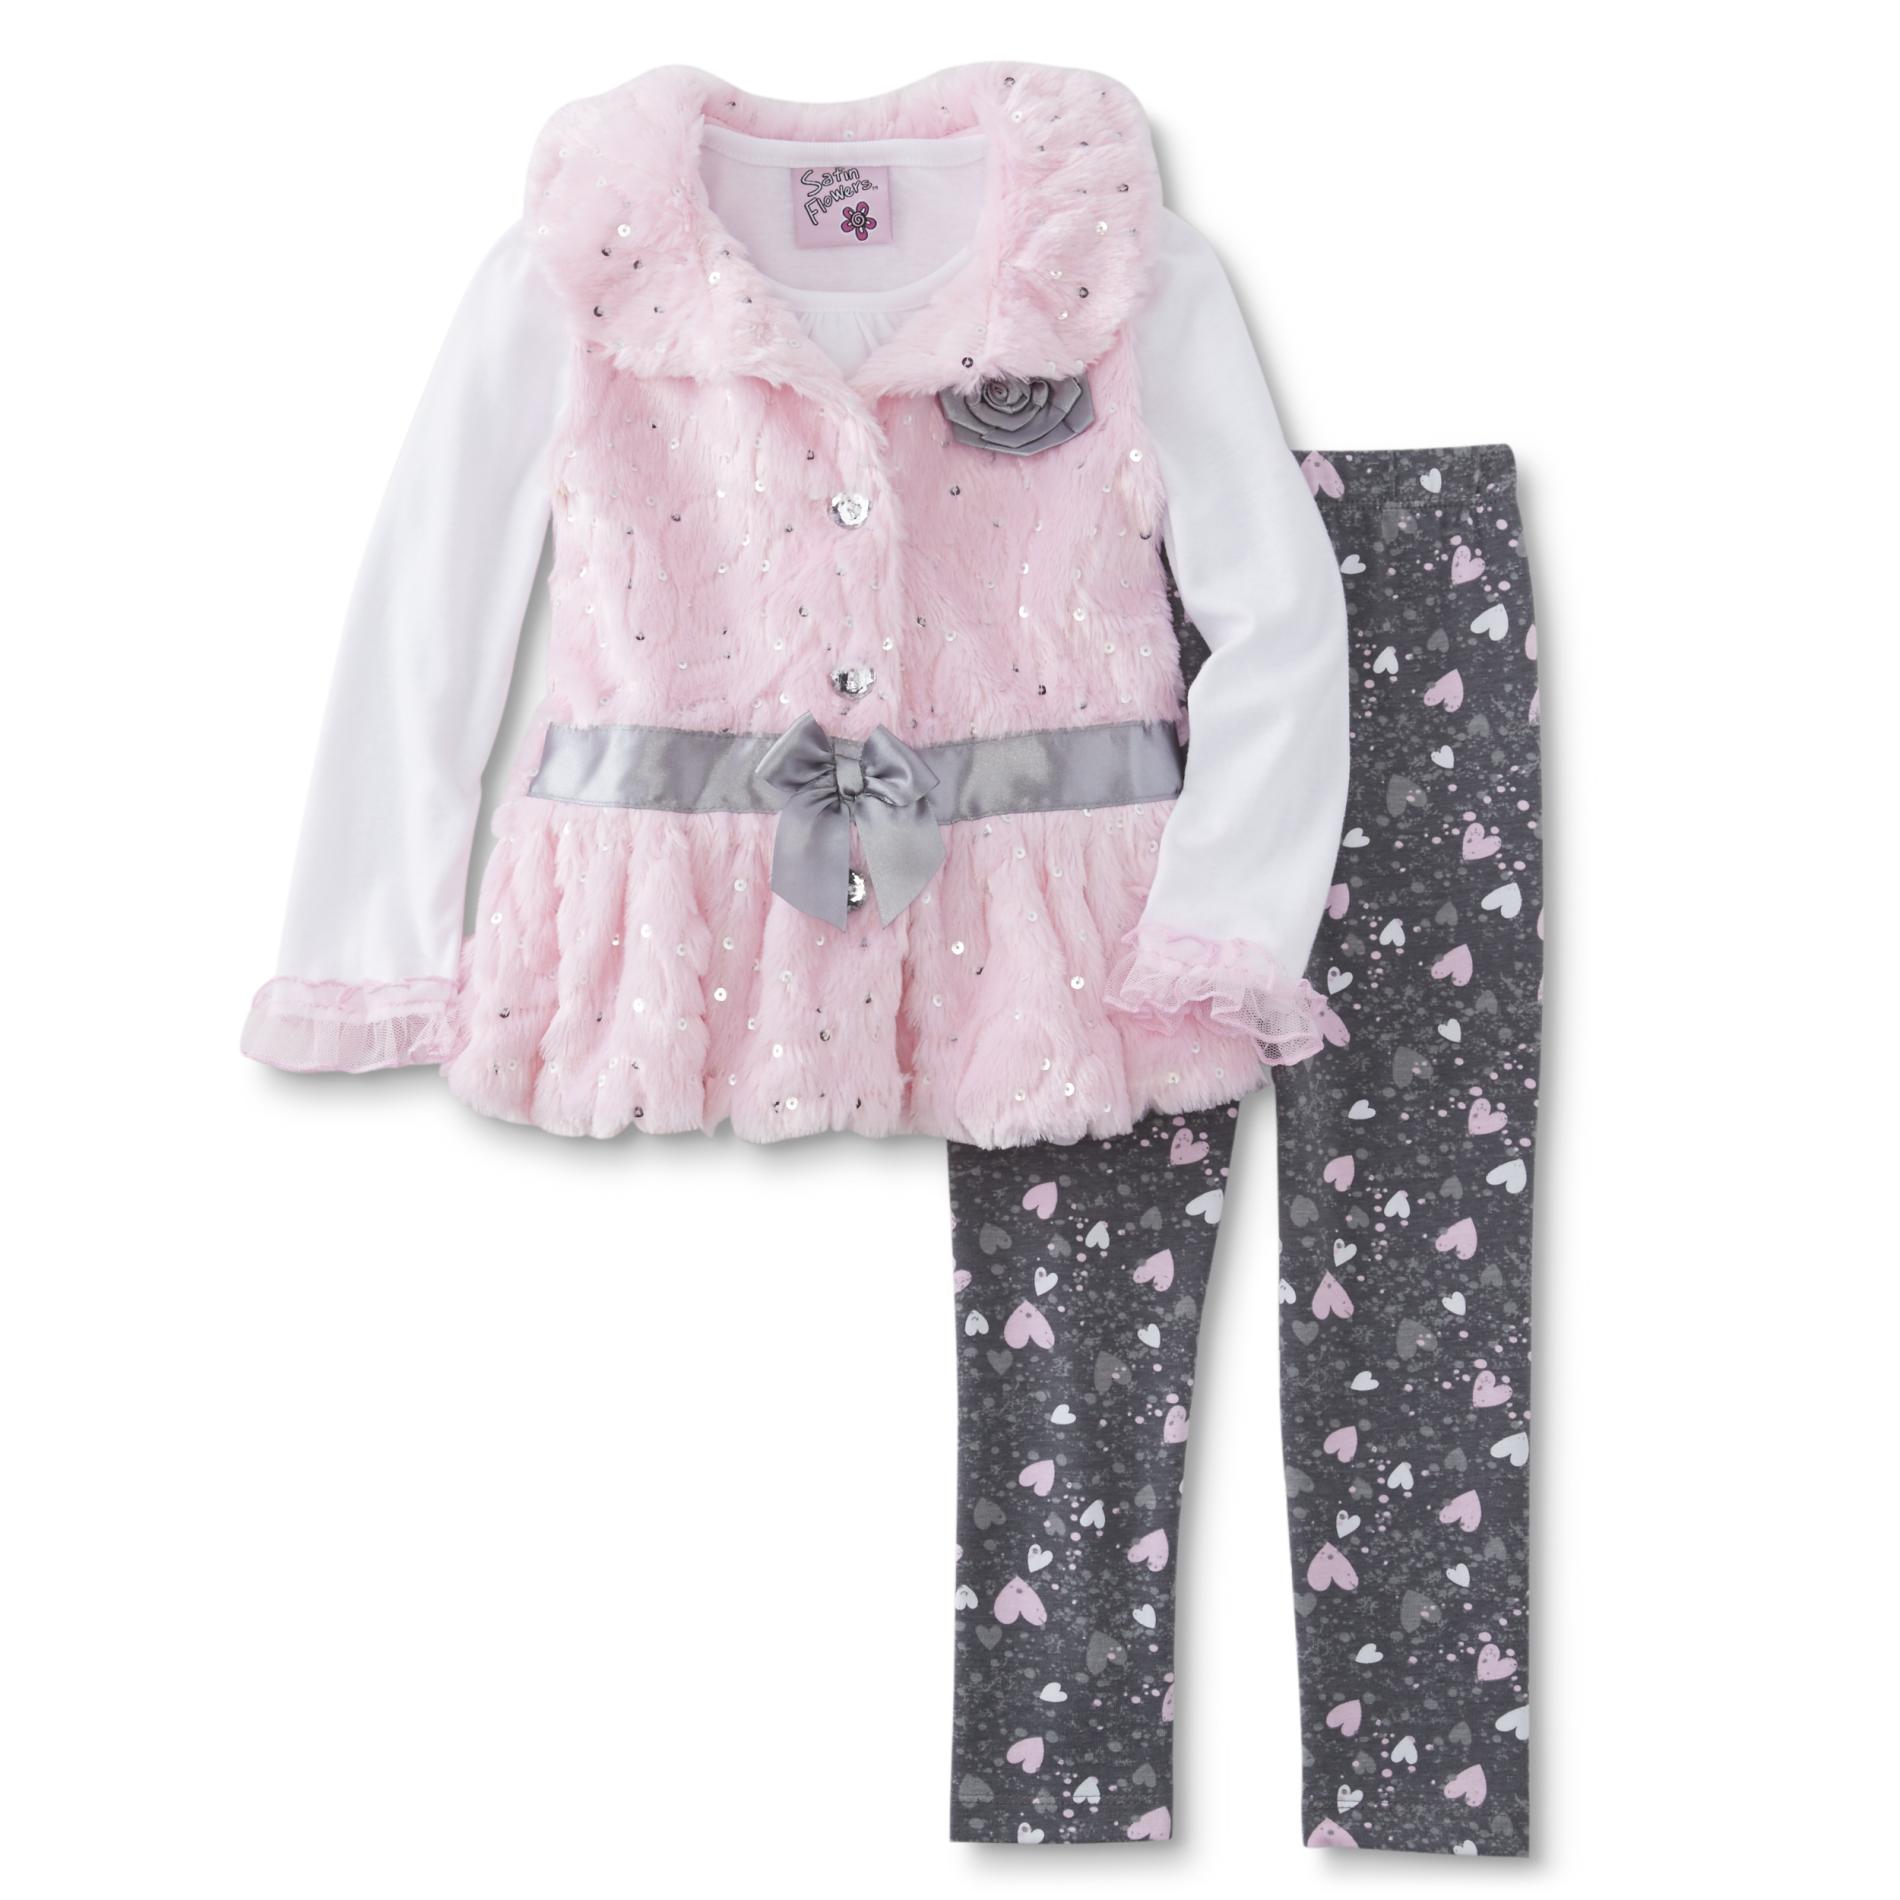 Infant & Toddler Girls' Vest, Shirt & Leggings - Hearts